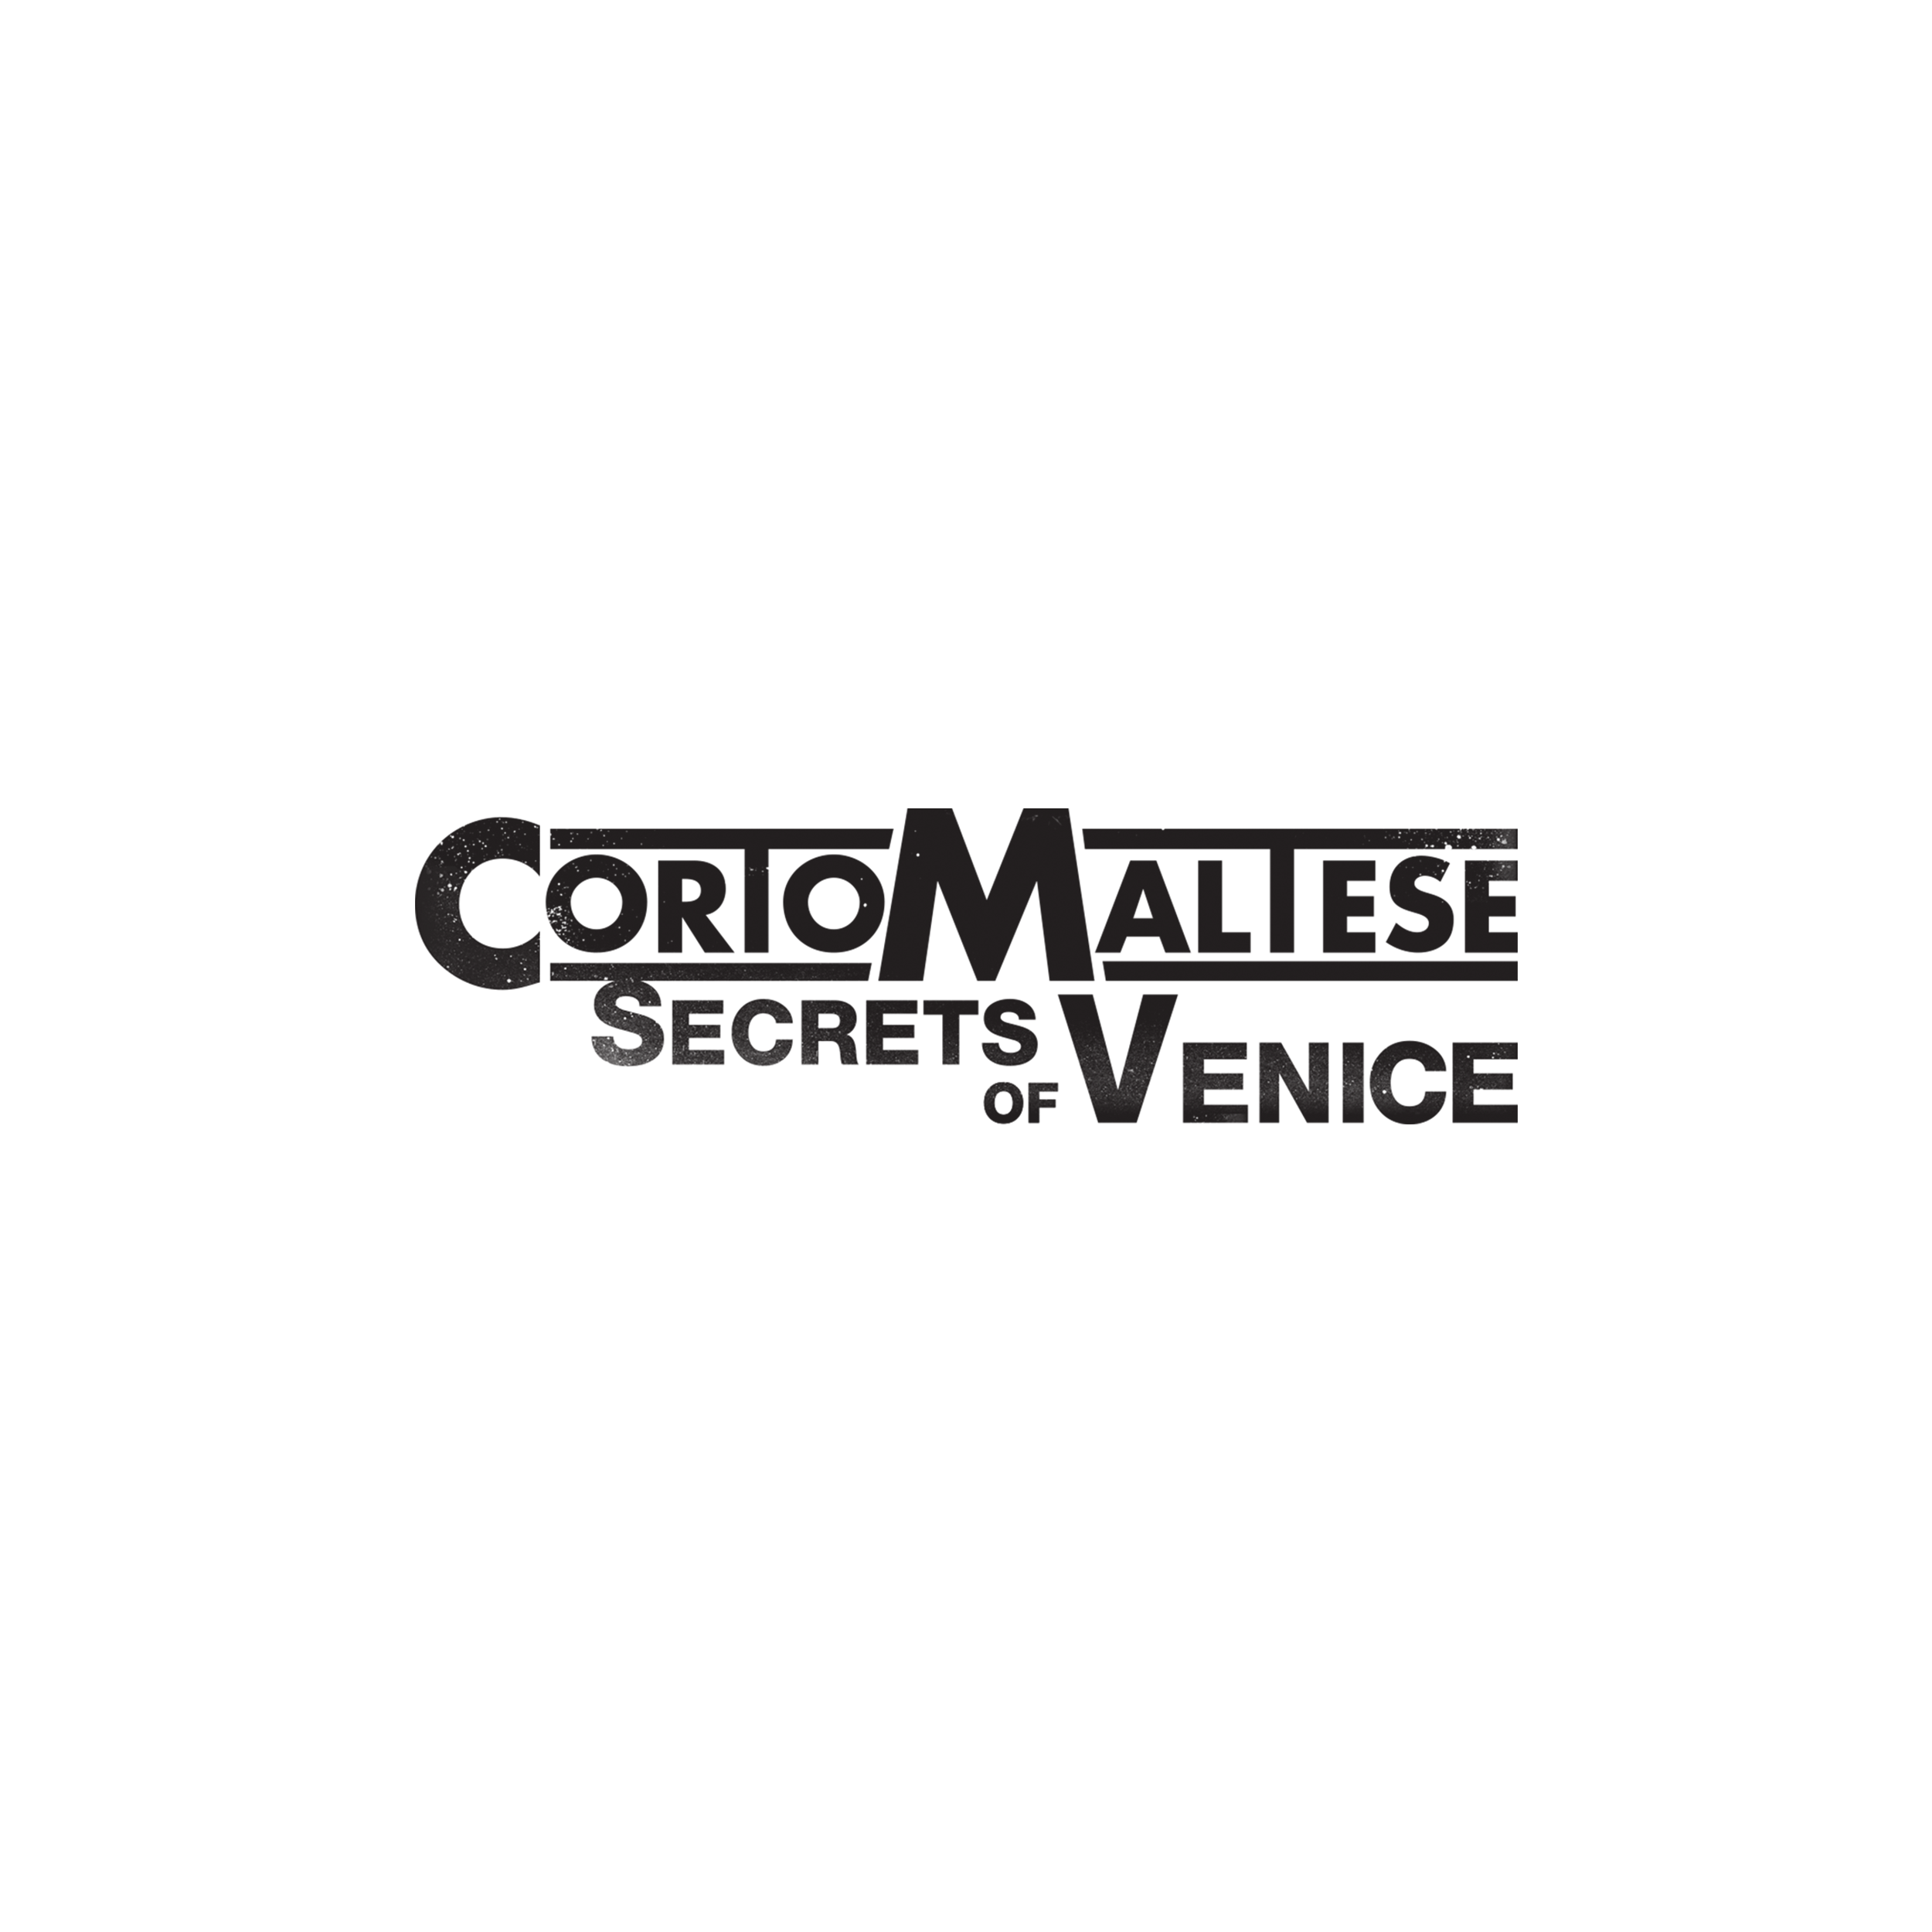 Corto Maltese - Secrets of Venice logo